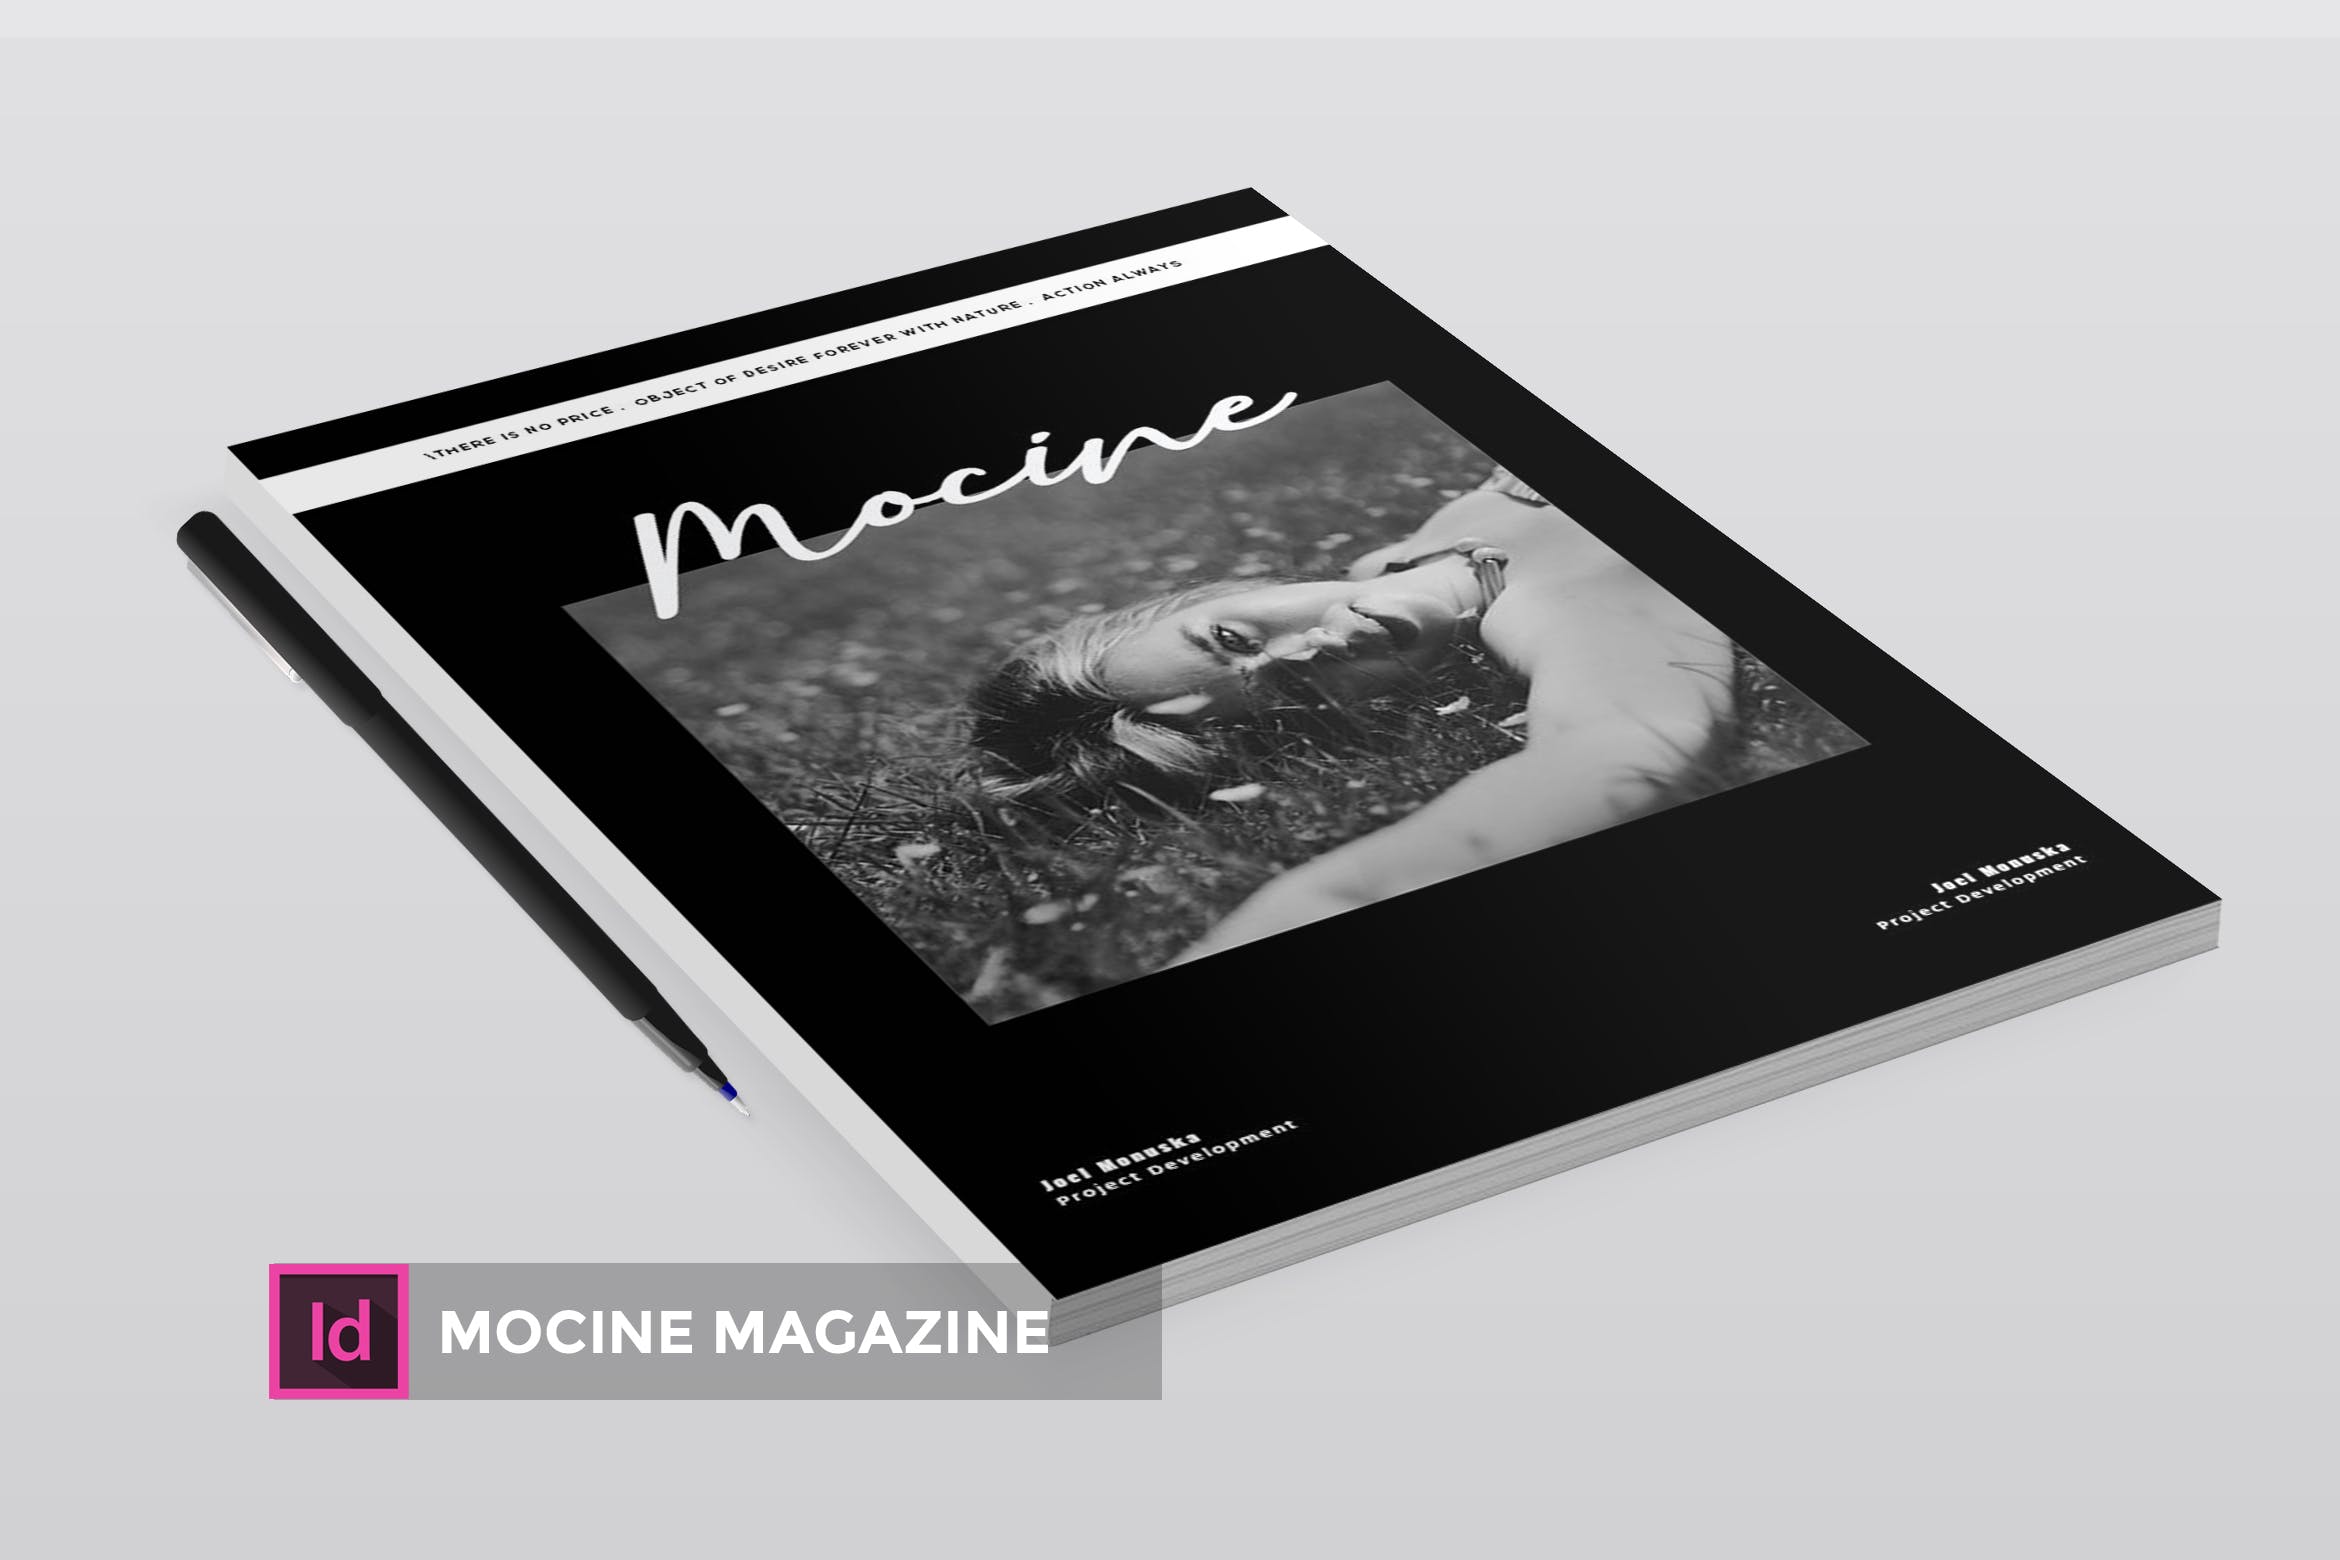 高端人物/摄影/时尚主题第一素材精选杂志版式排版设计INDD模板 Mocine | Magazine Template插图